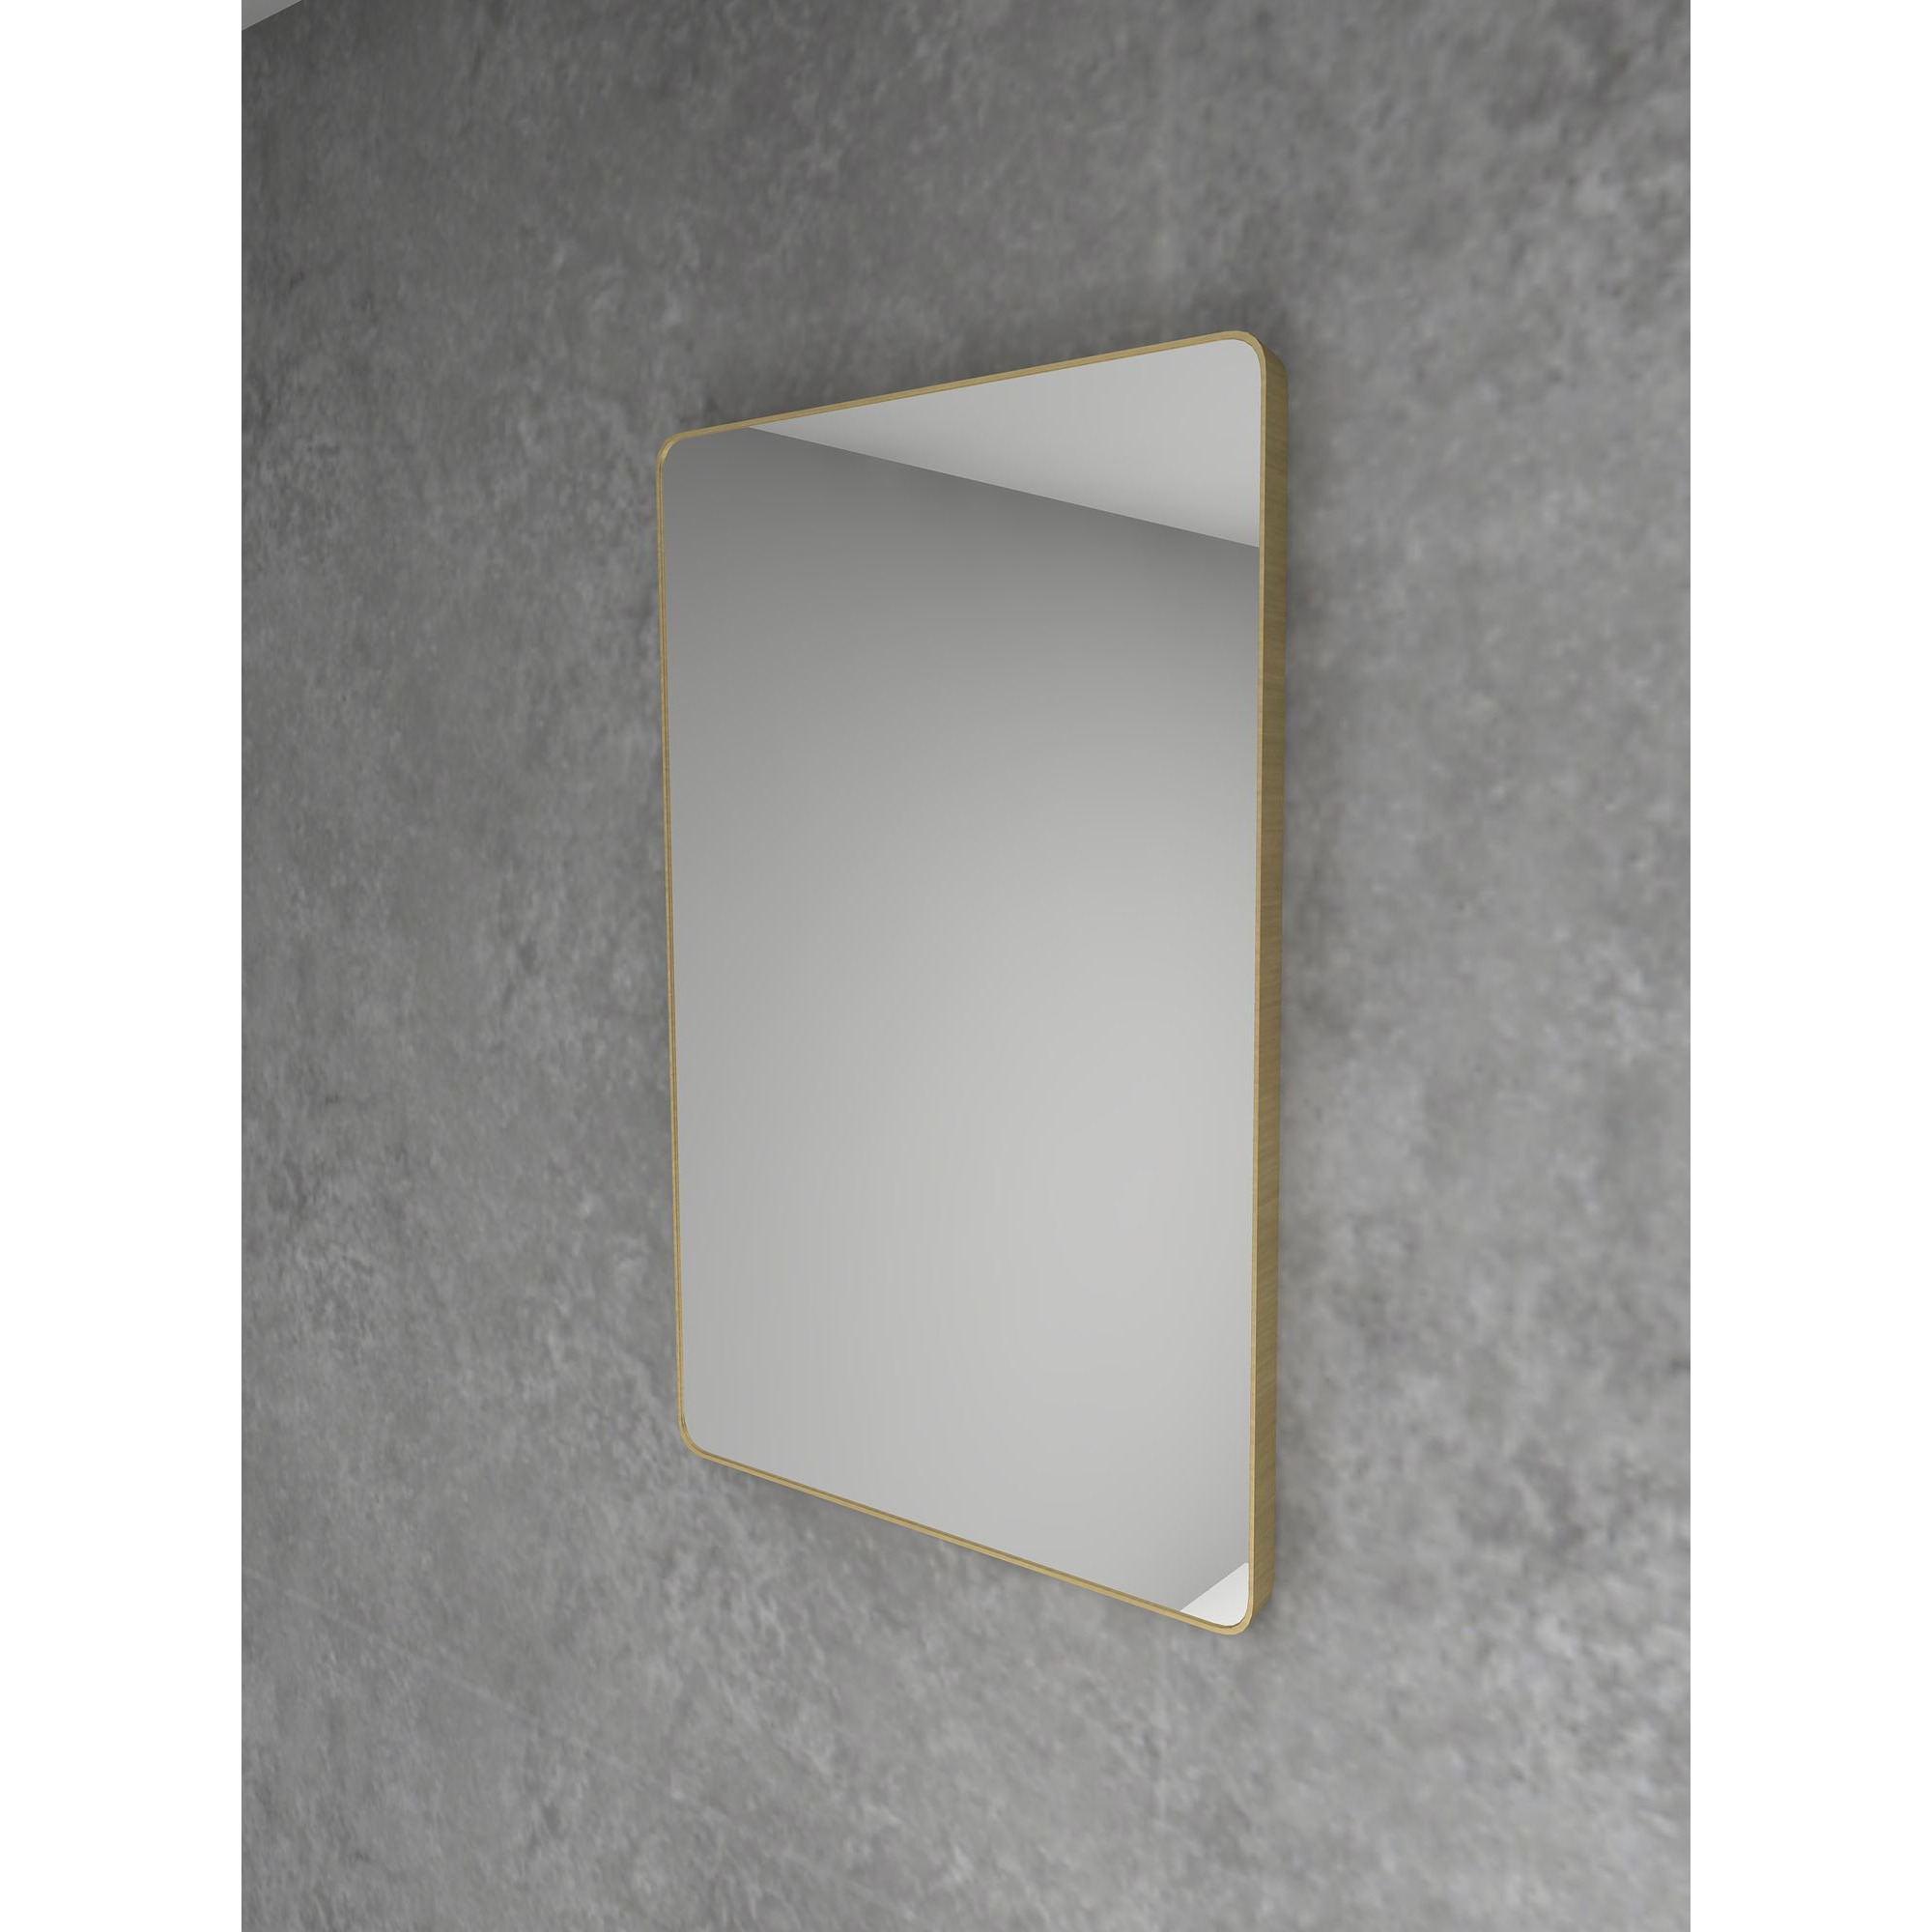 HiB Fusion Curve Bathroom Mirror - image 1